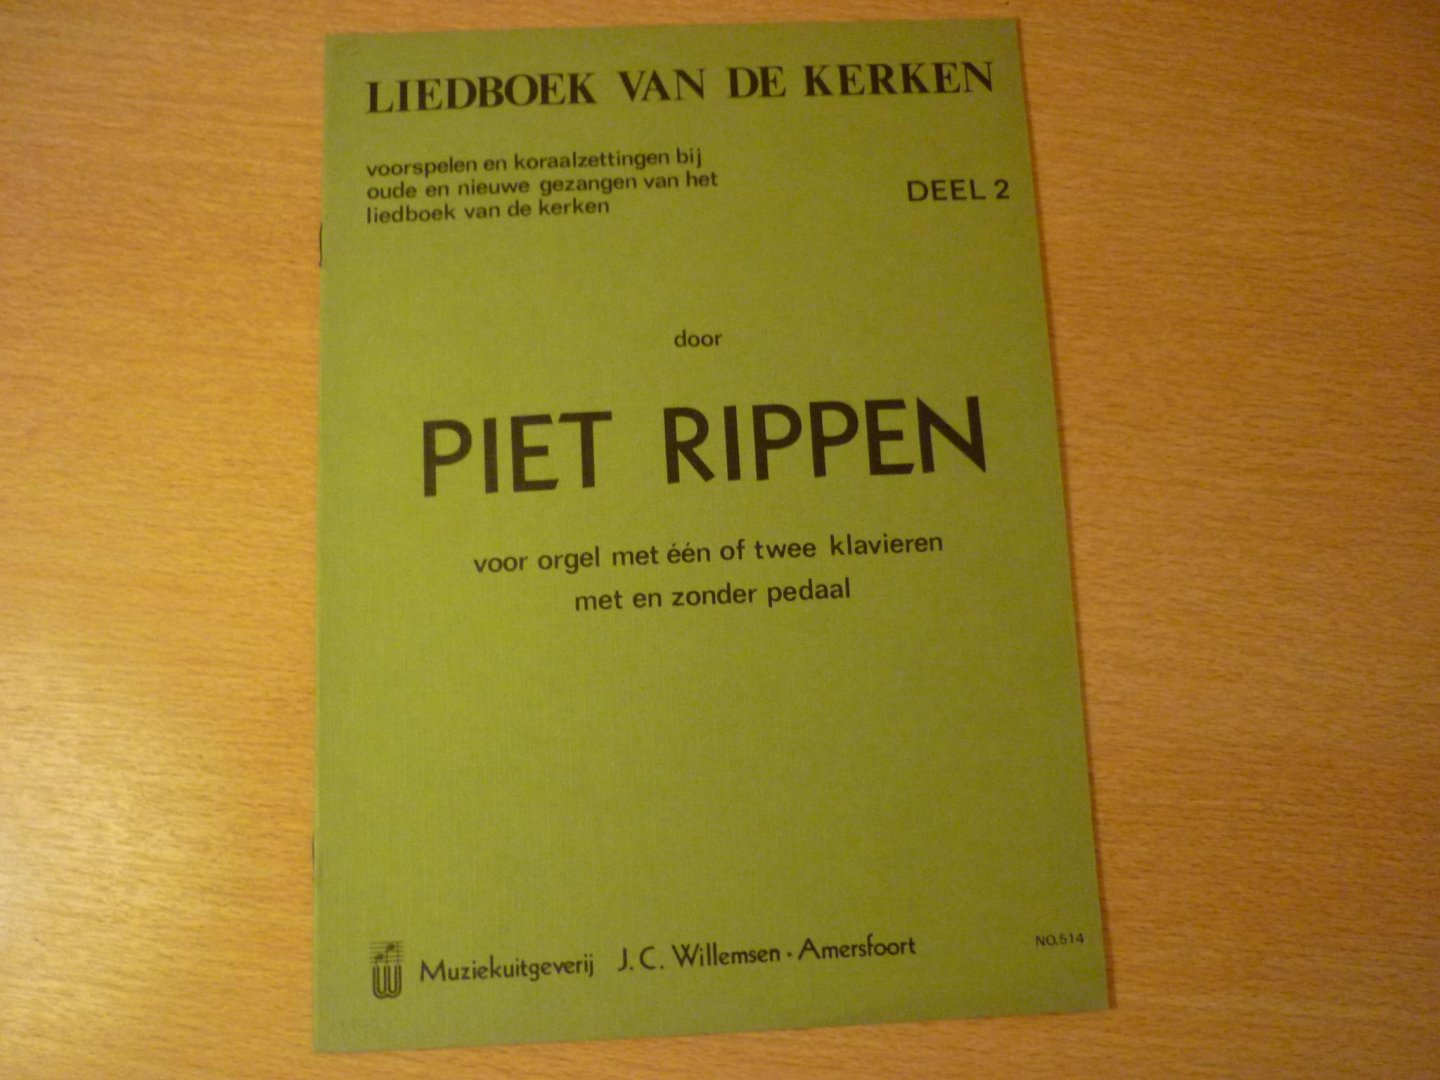 Rippen; Piet - Liedboek van de kerken - Deel 2;  Voorspelen en Koraalzettingen bij oude en nieuwe gezangen van het liedboek van de kerken